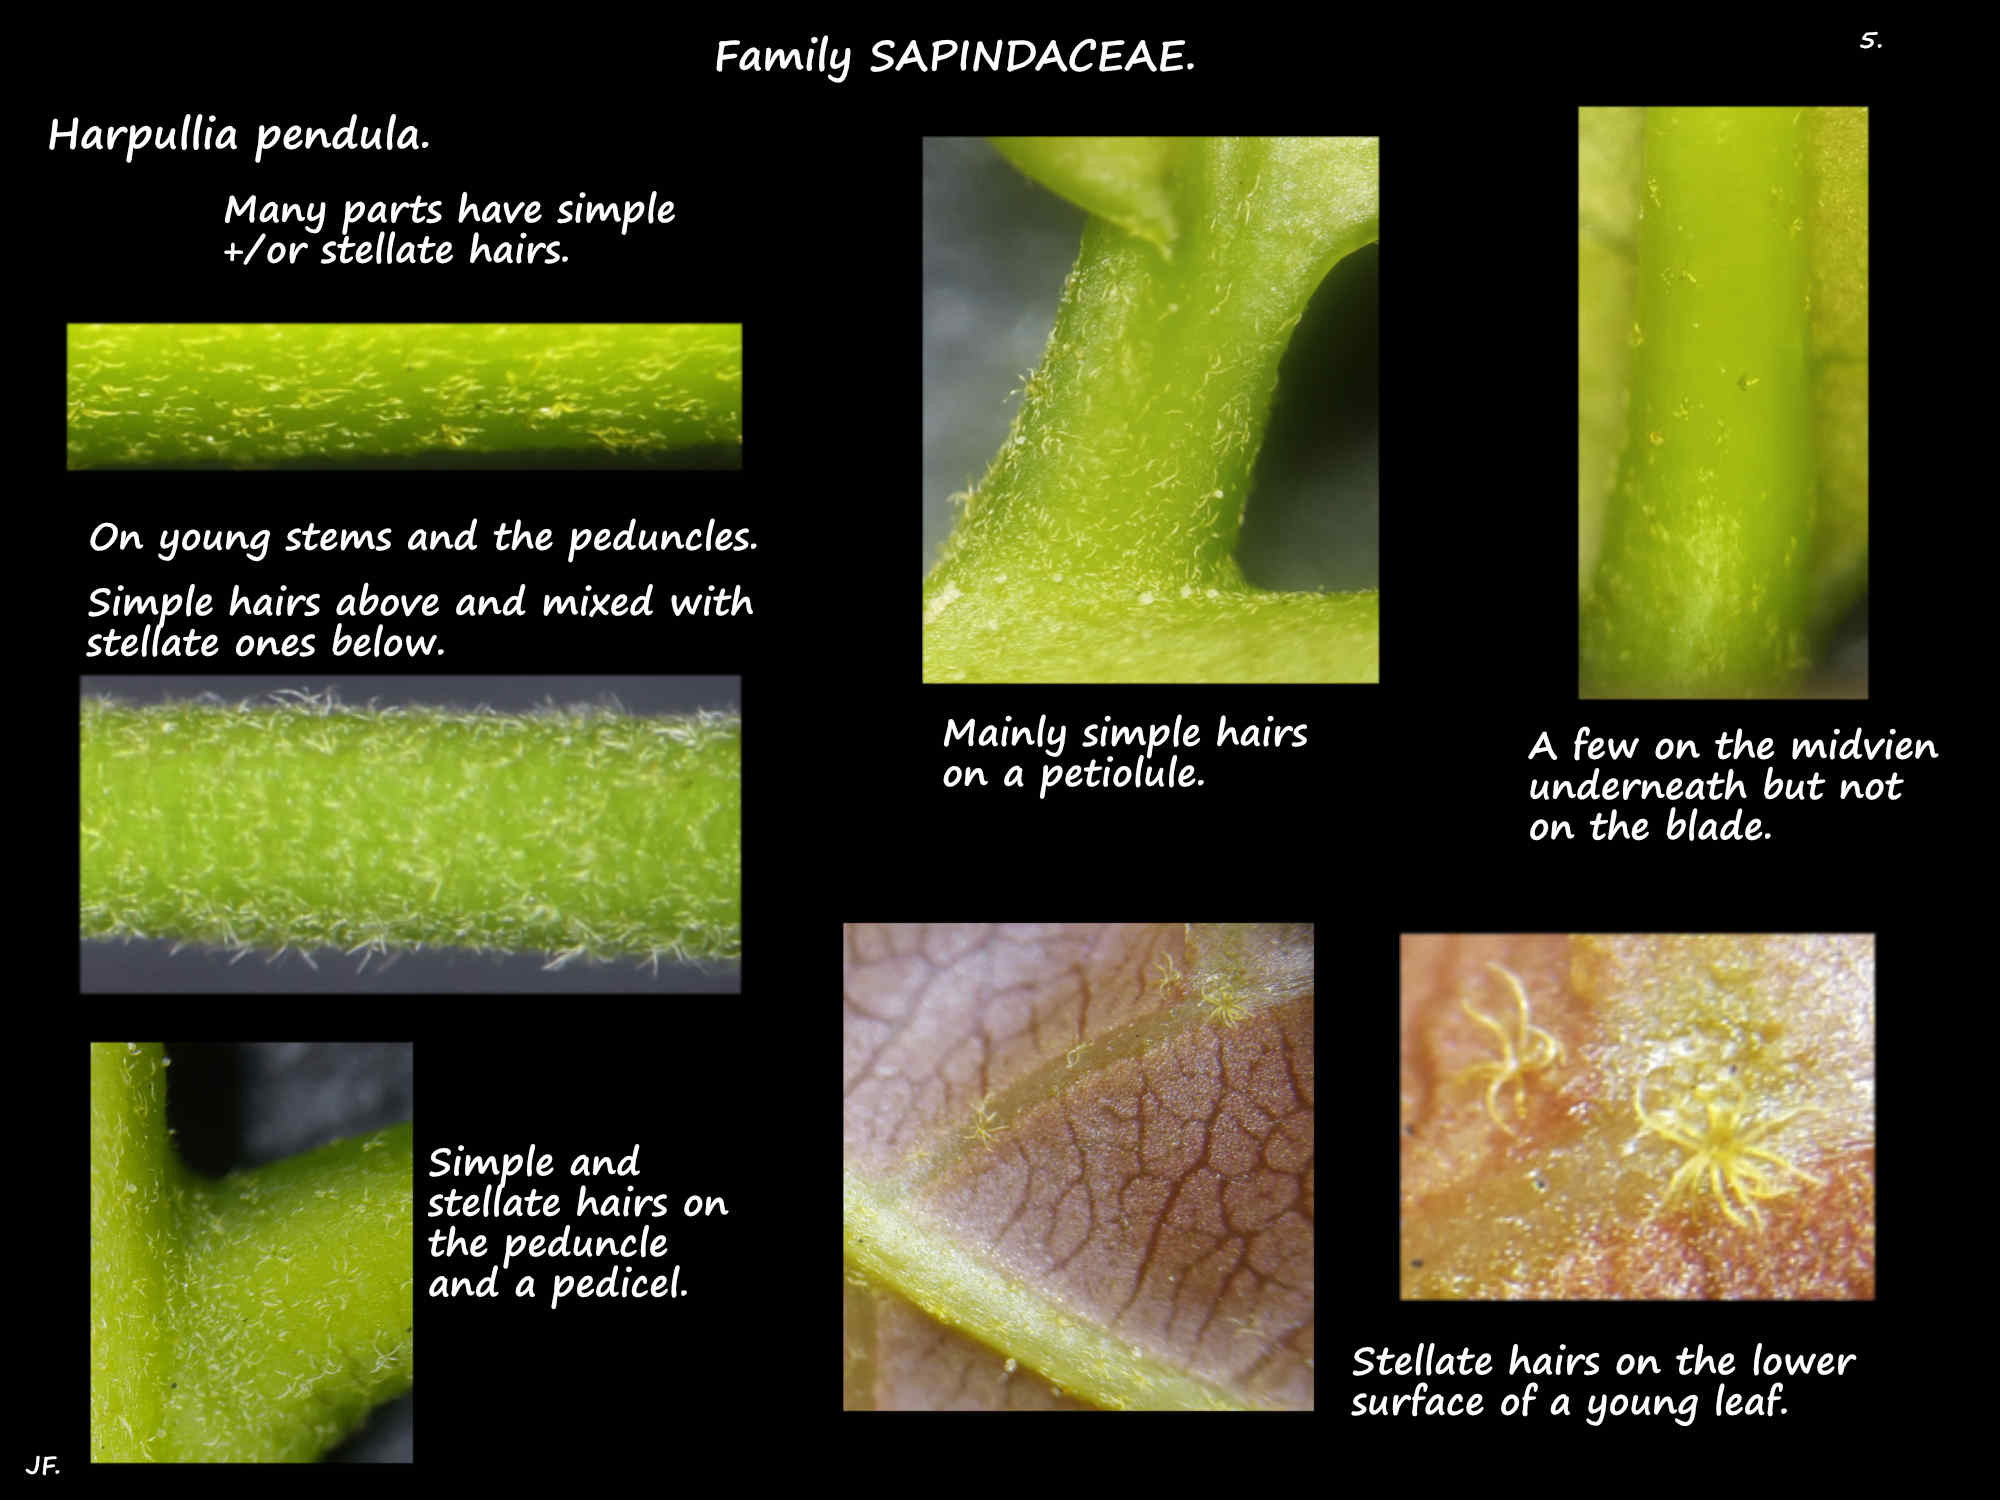 5 Simple & stellate hairs on Harpullia pendula leaves